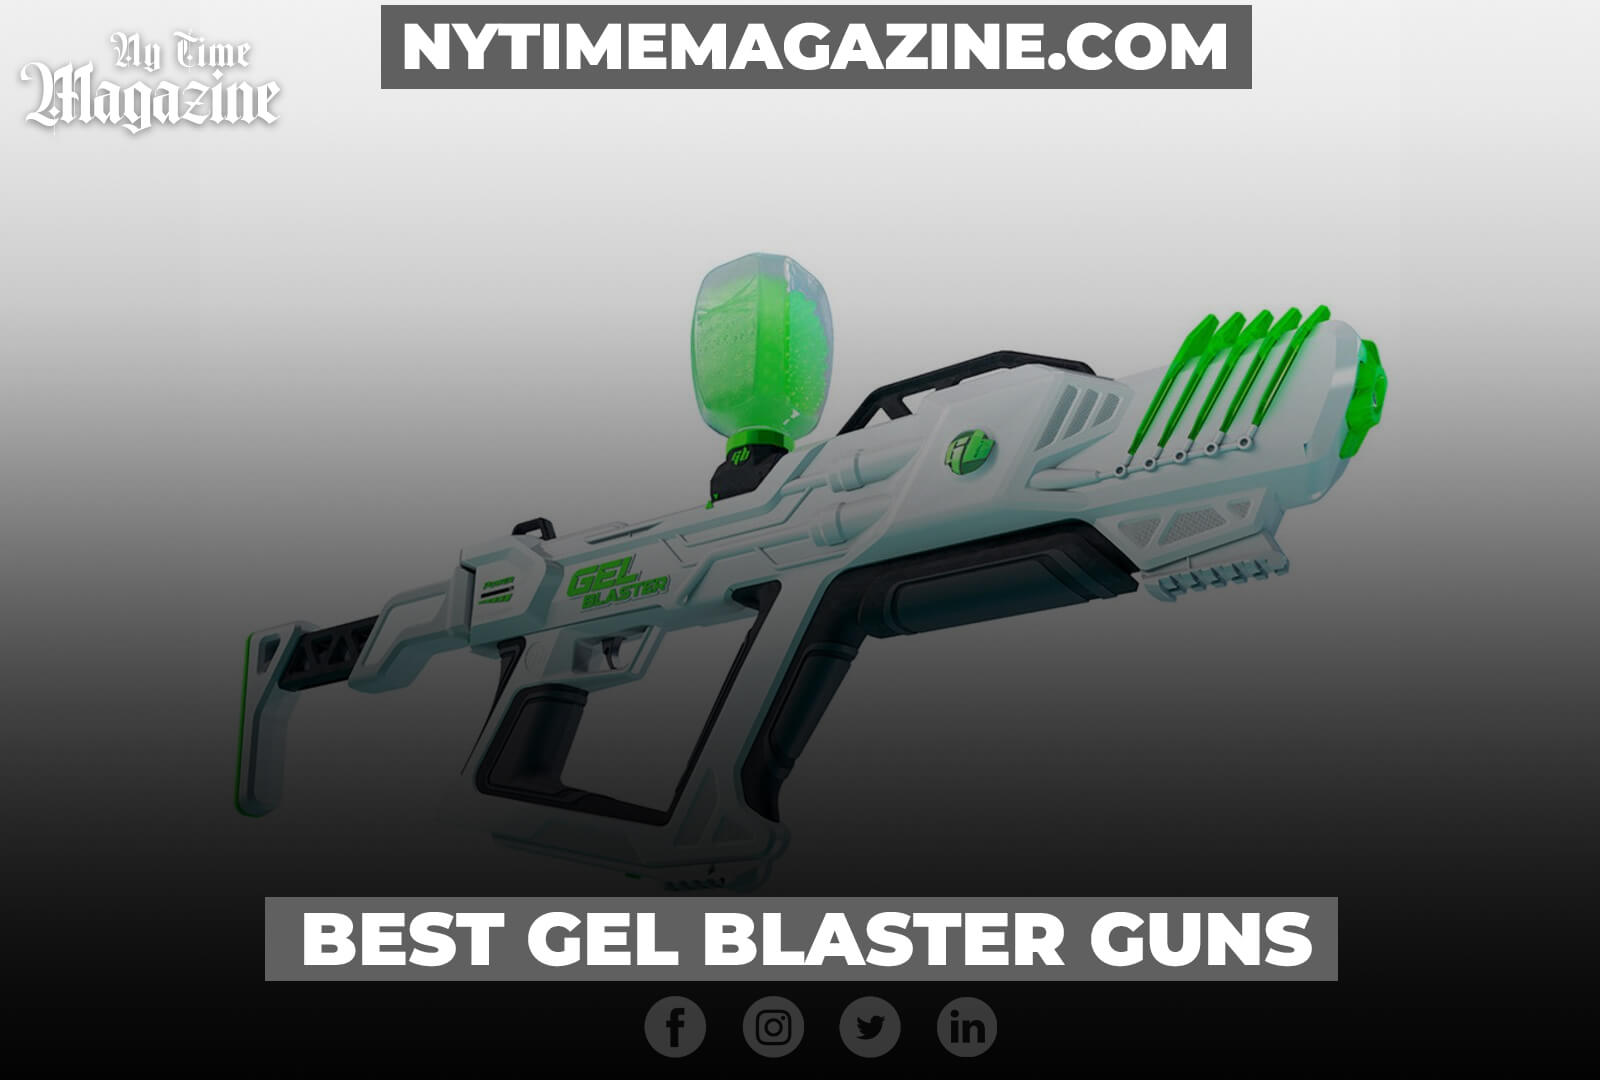 BEST GEL BLASTER GUNS